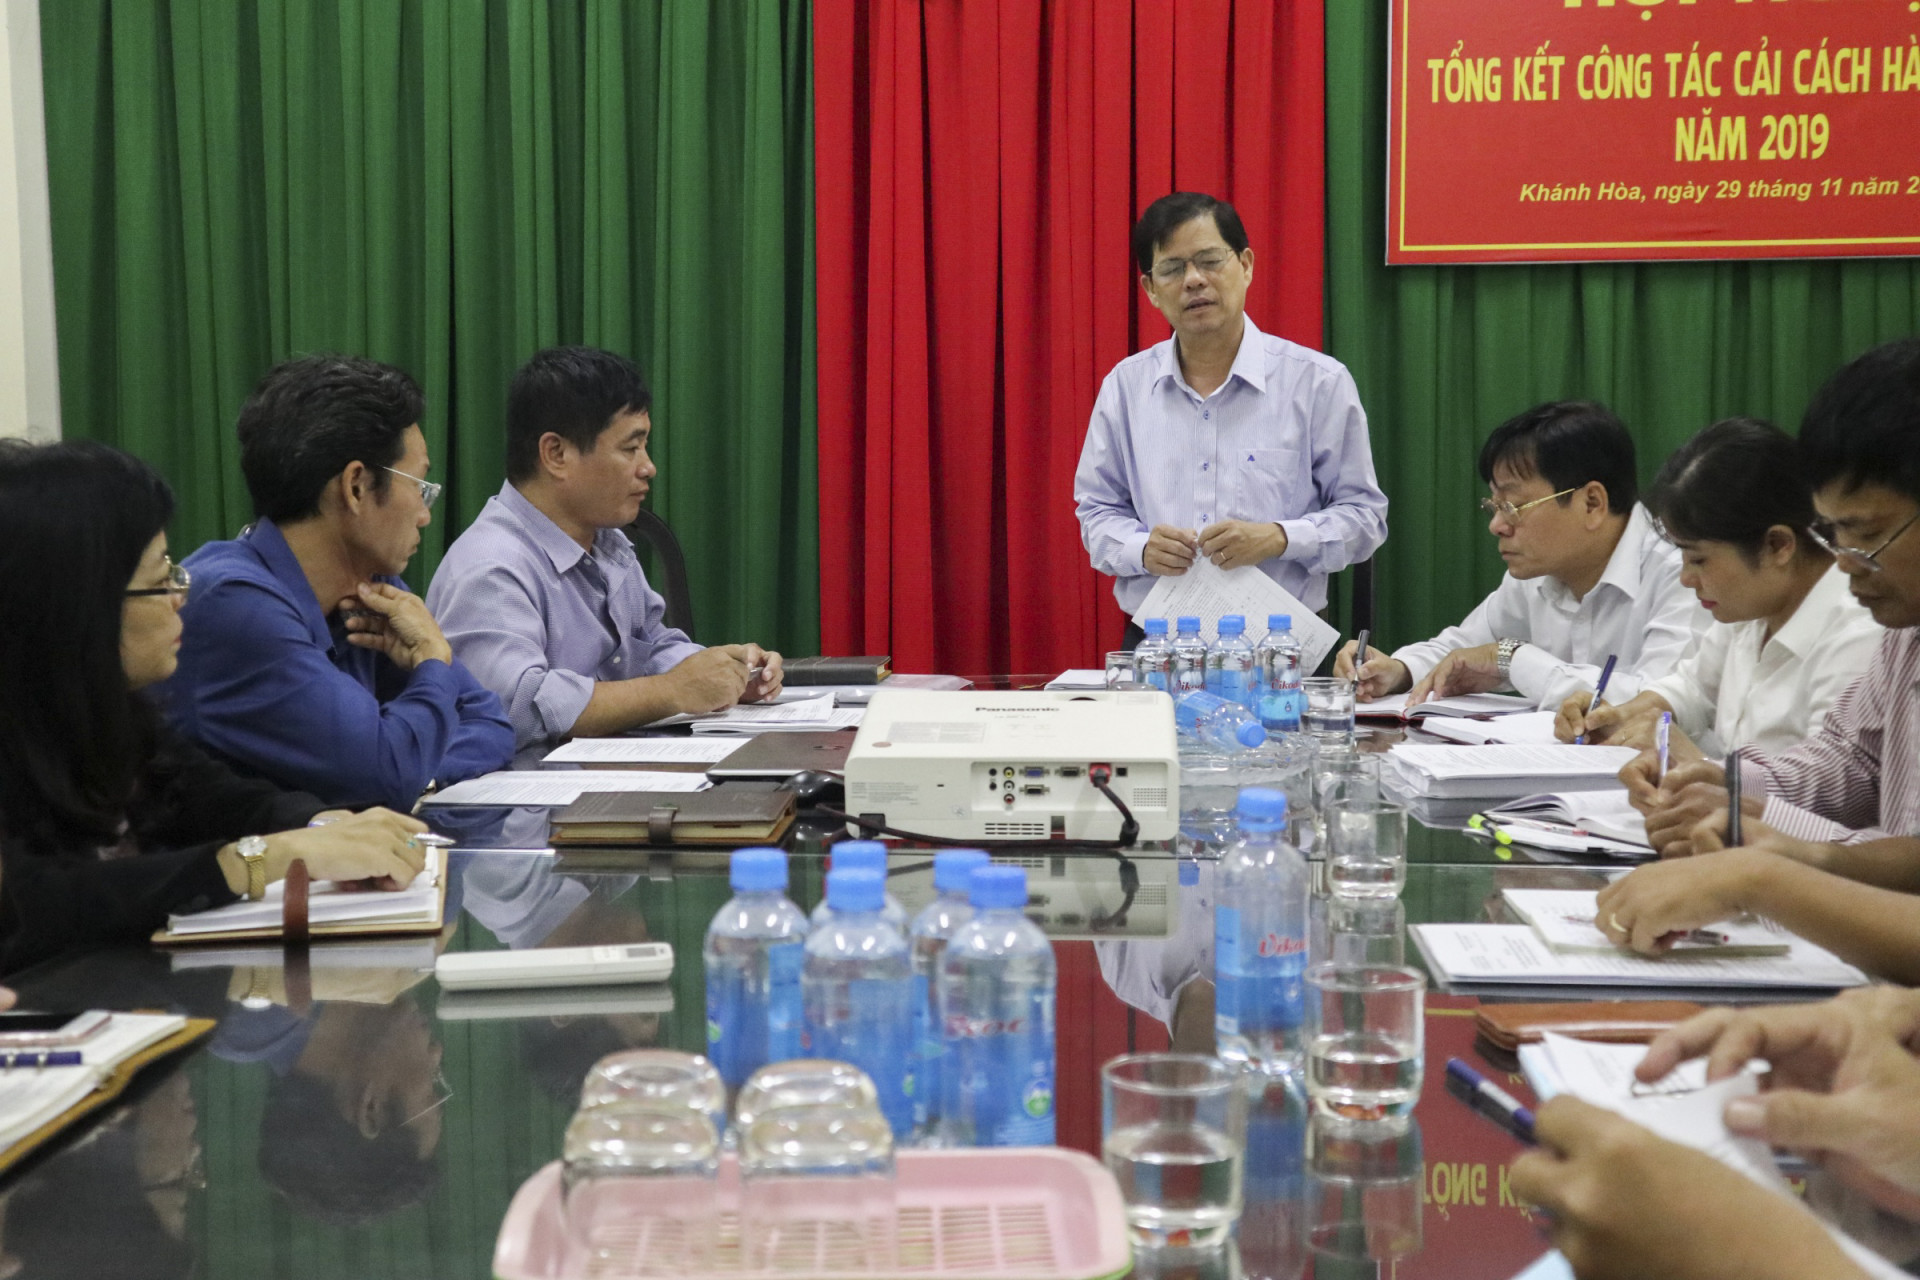 Ông Nguyễn Tấn Tuân phát biểu chỉ đạo tại buổi làm việc.